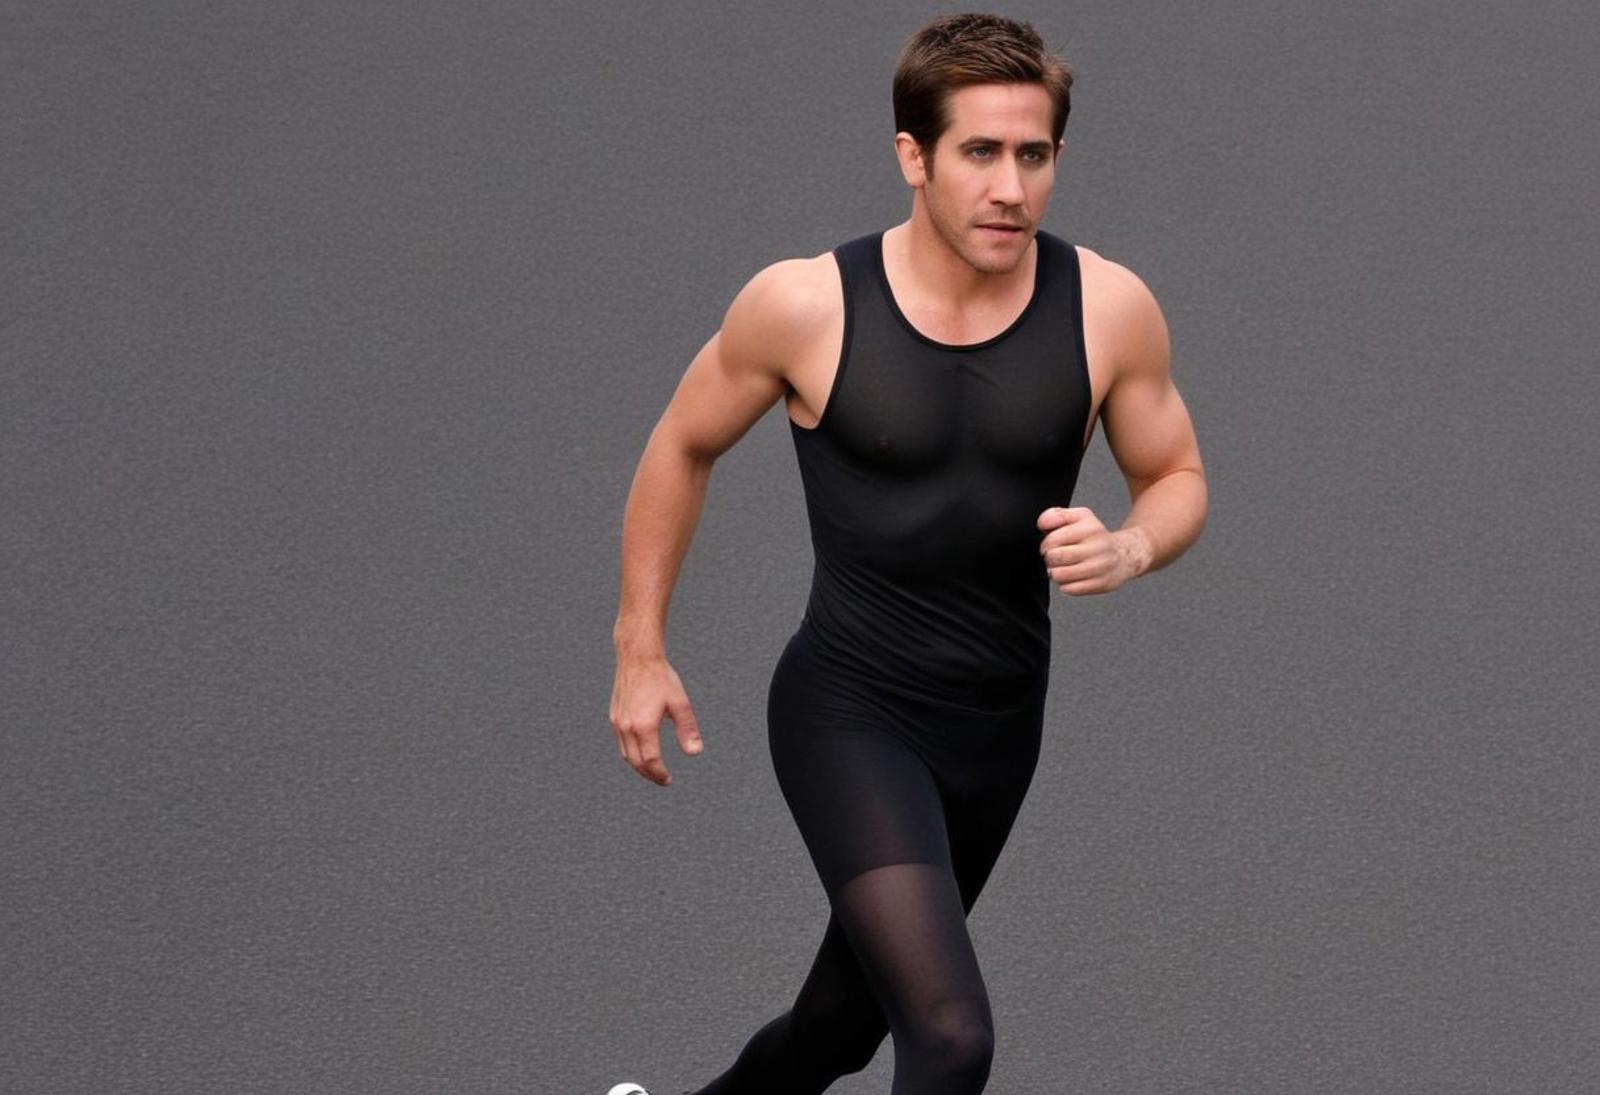 Jake Gyllenhaal image by hottiesnhotties